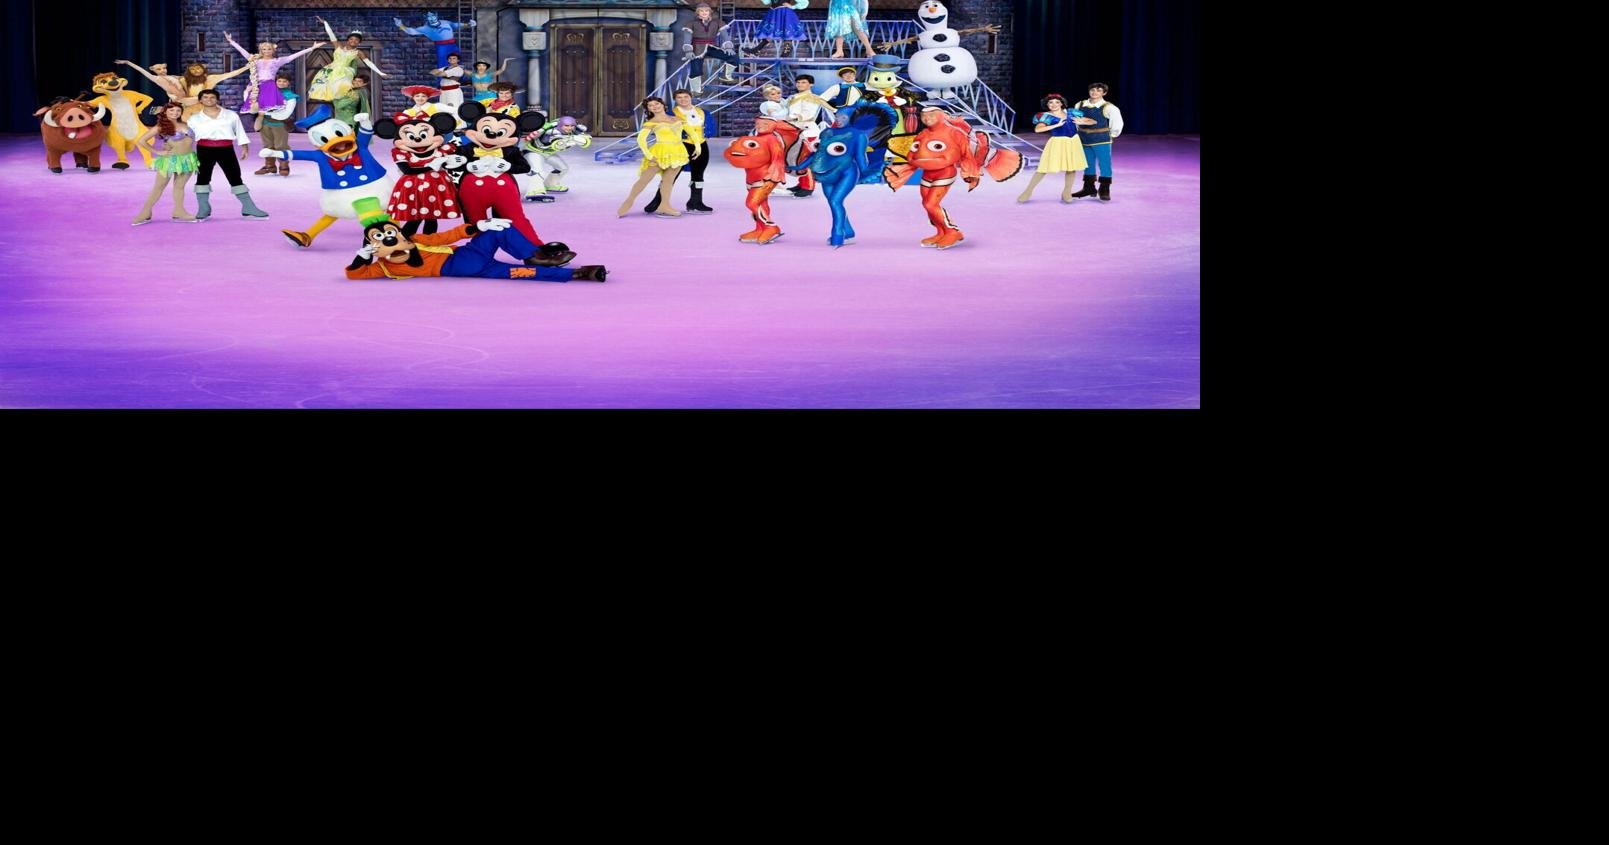 Disney on Ice returning to Mohegan Sun Arena Entertainment